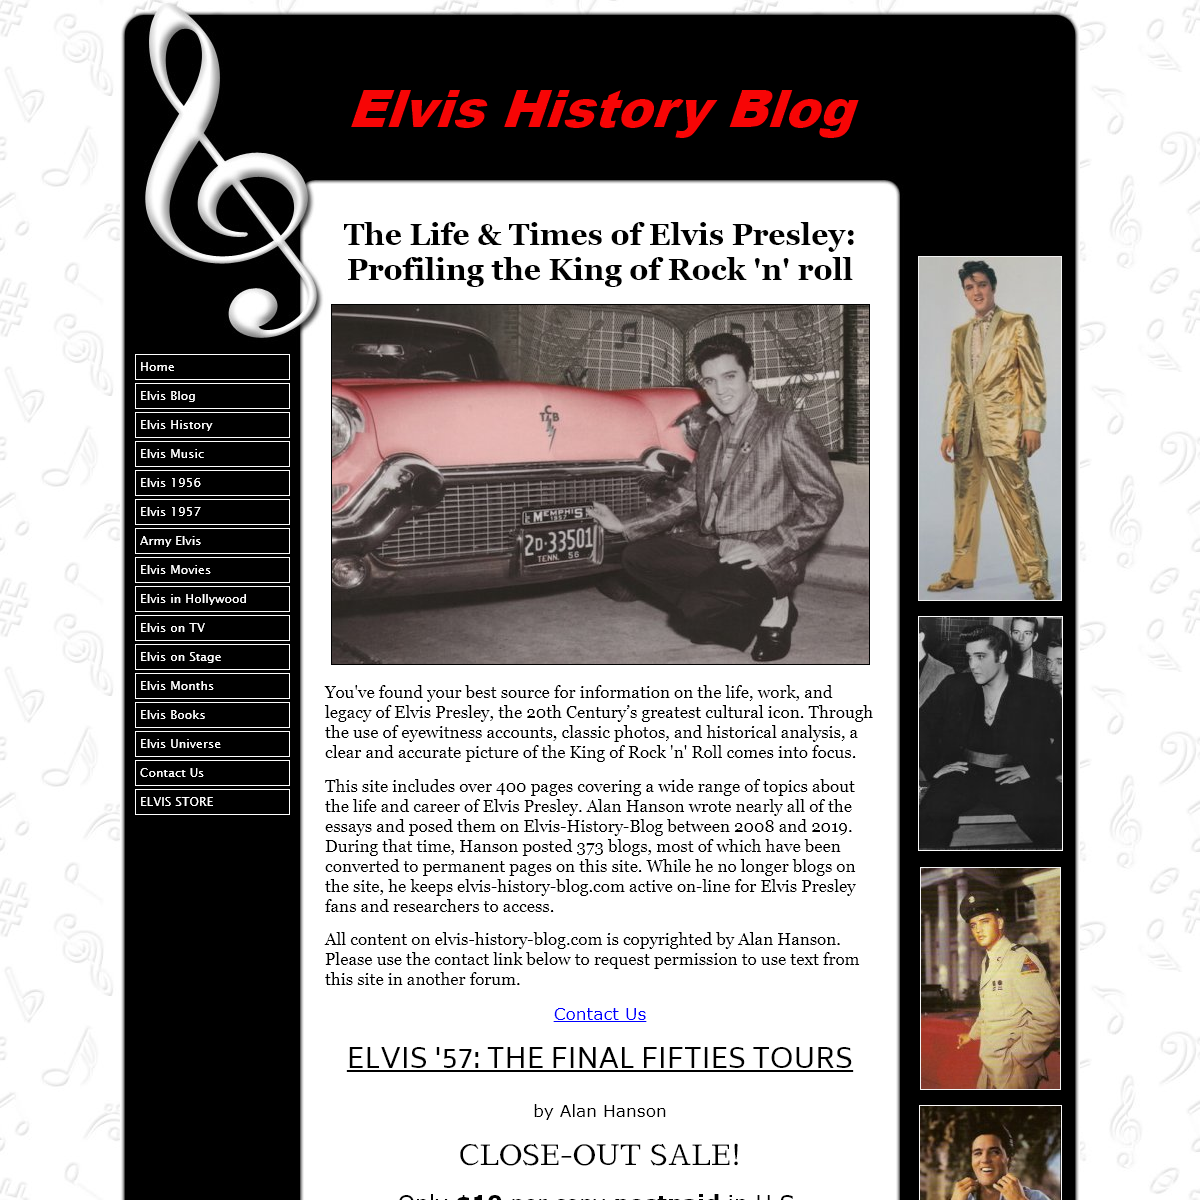 A complete backup of elvis-history-blog.com